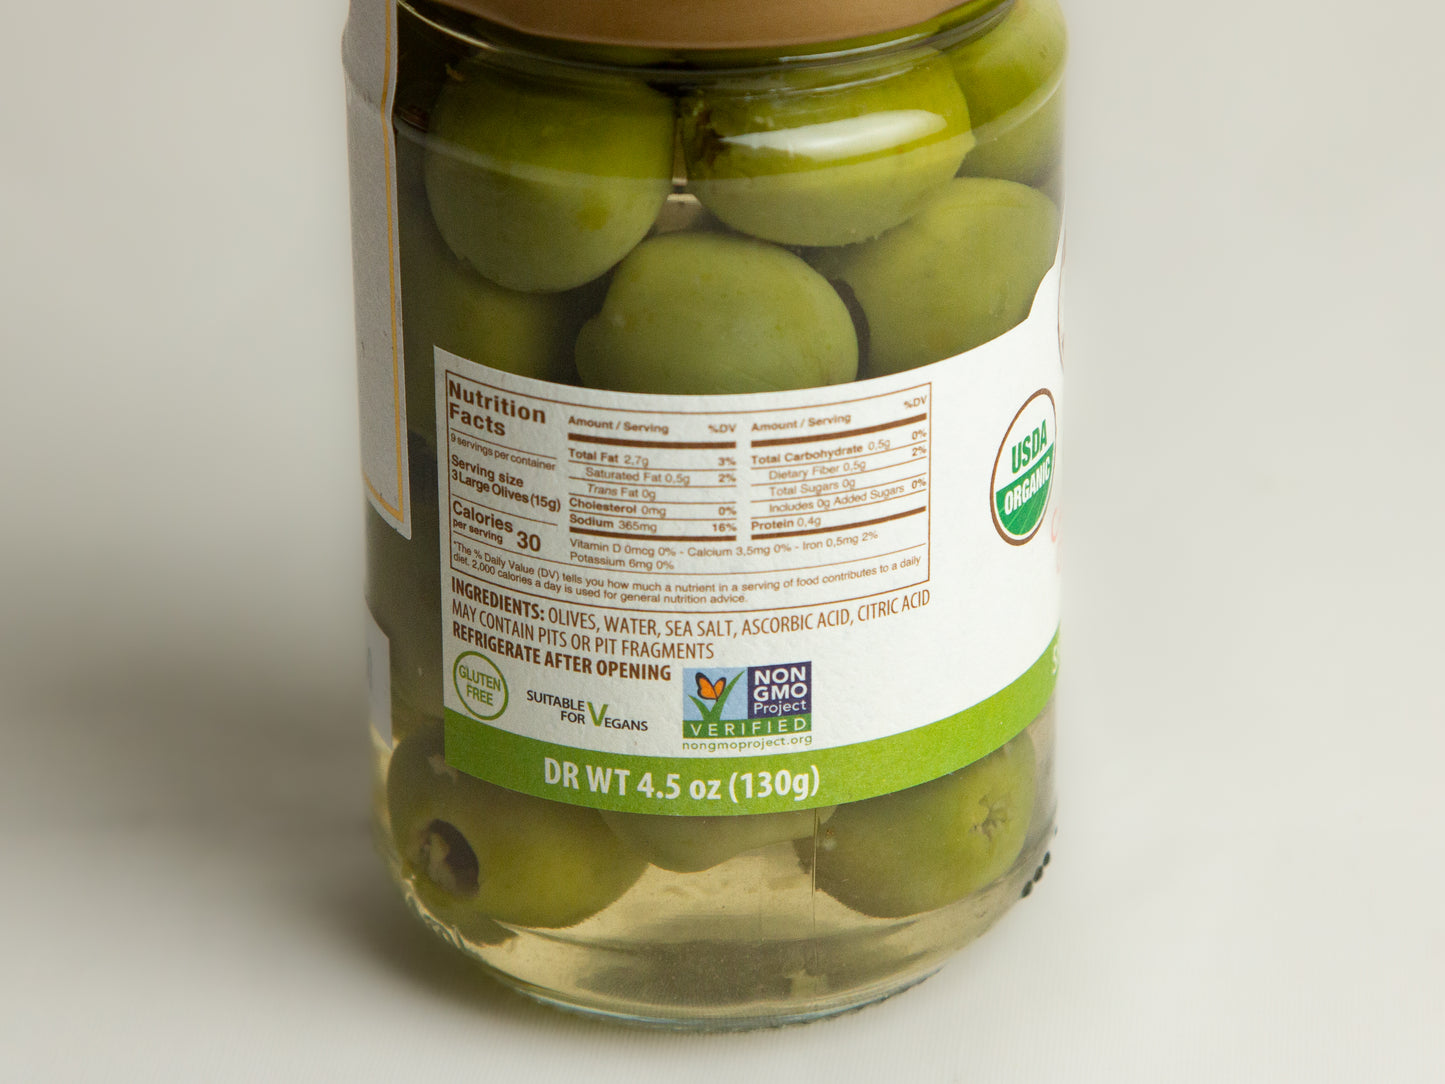 Asaro Organic Castelvtrano Green Olives Nutrition information in glass jar